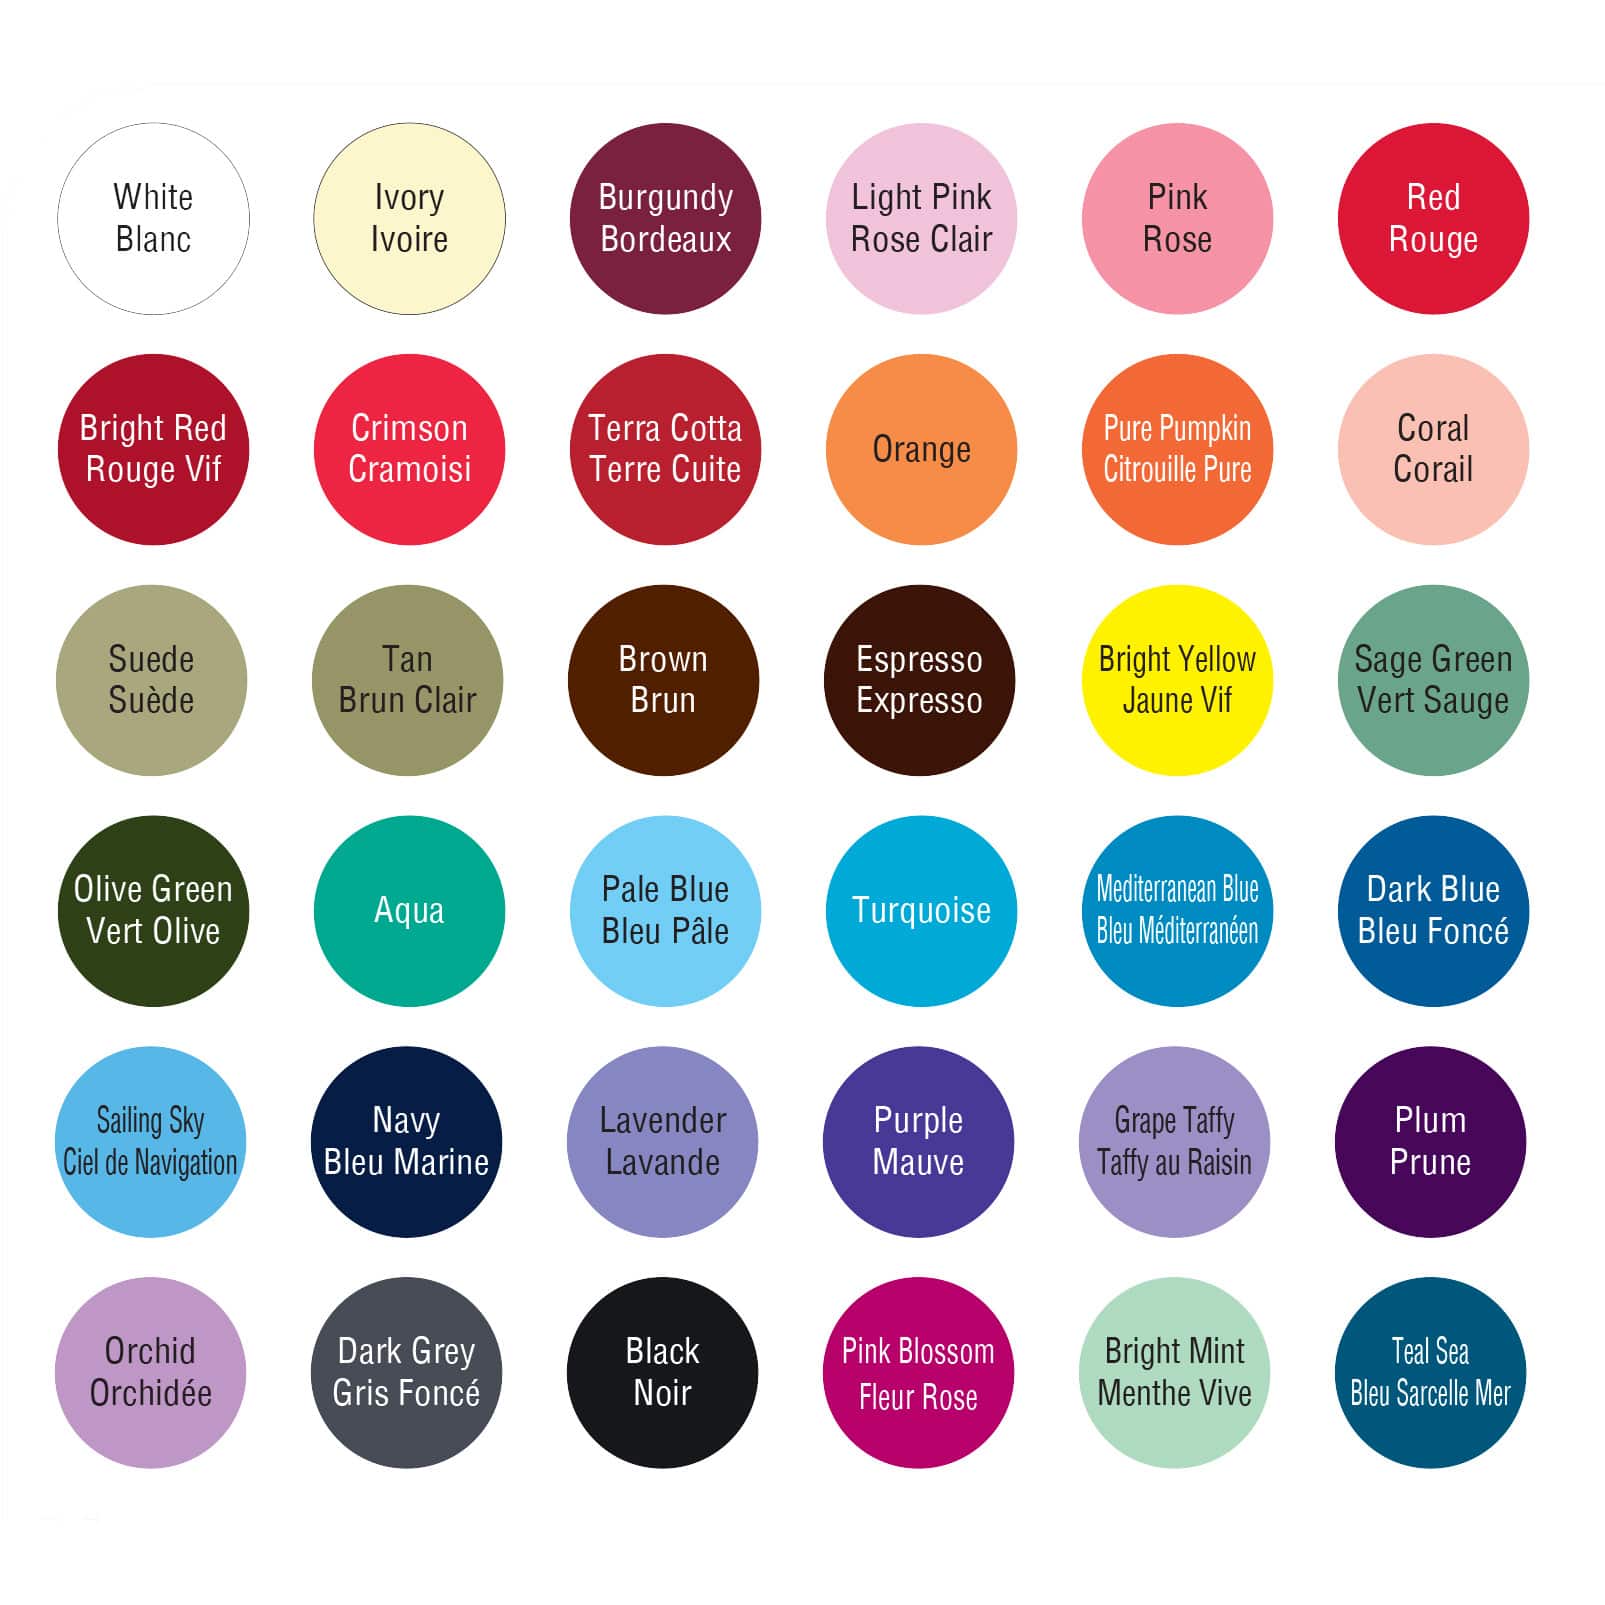 Apple Barrel Paint Color Chart